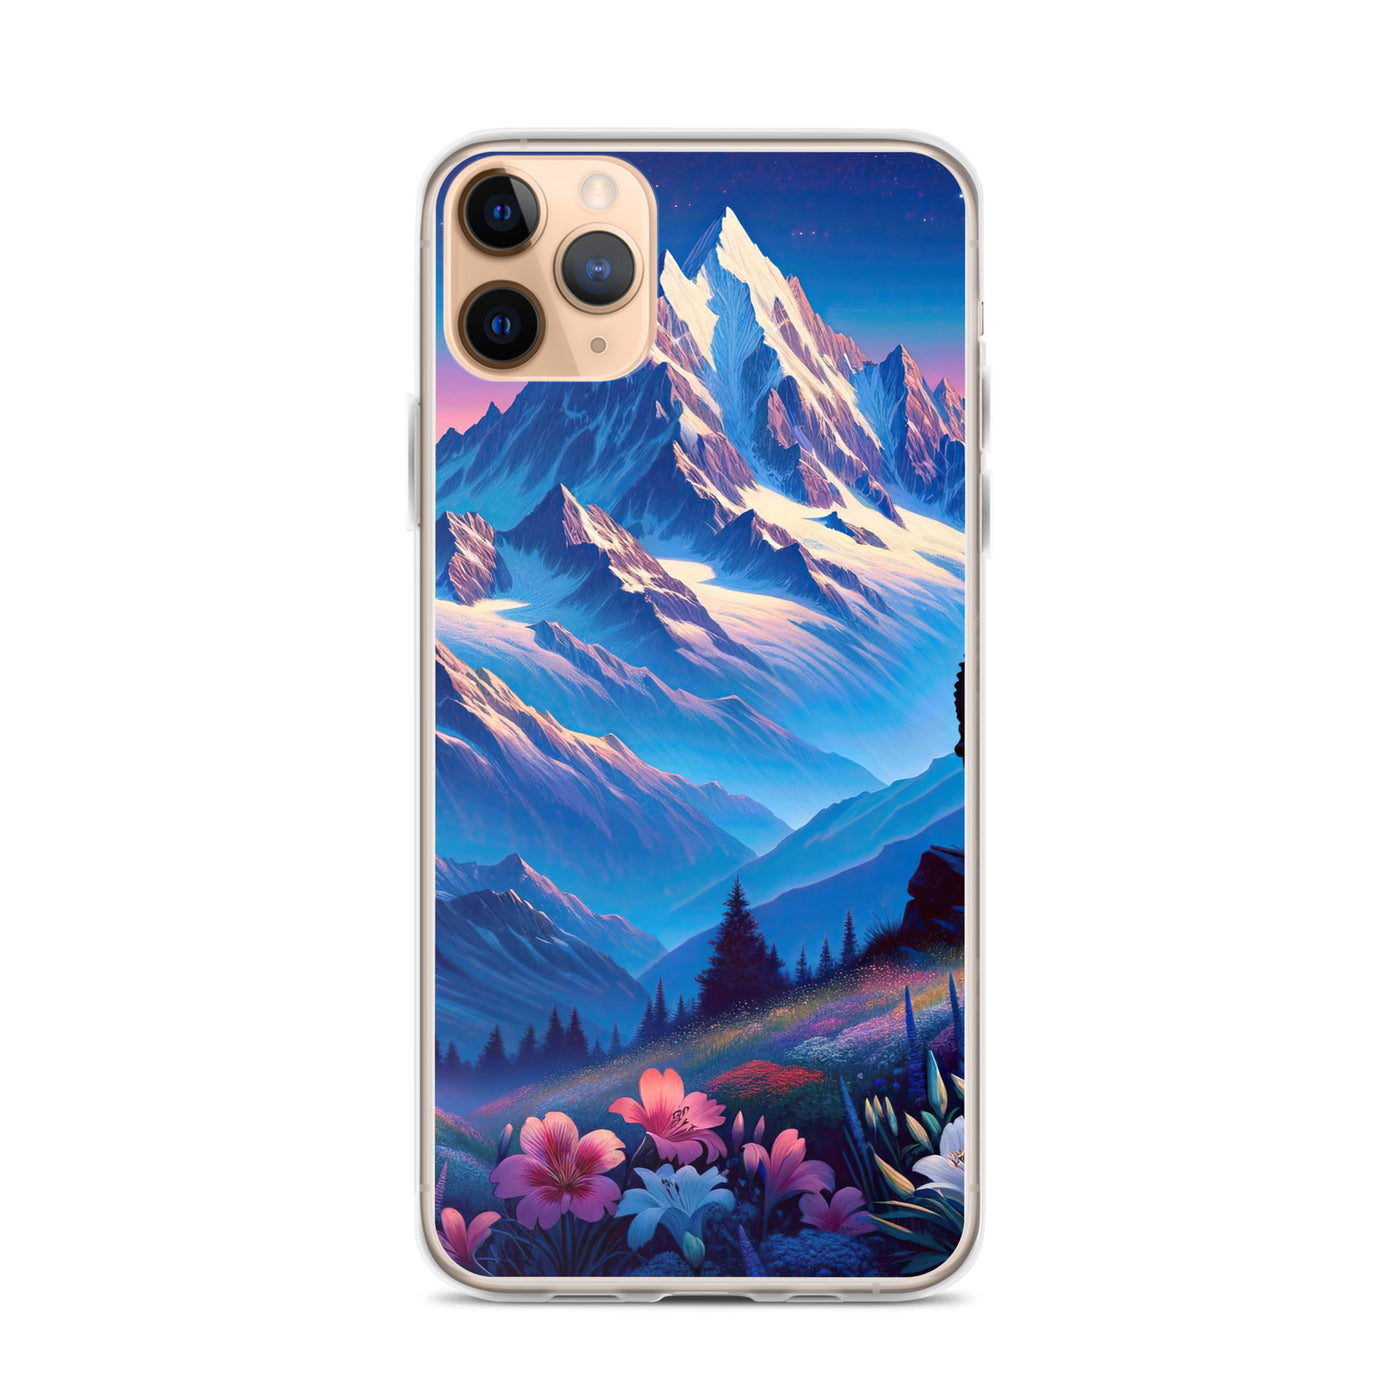 Steinbock bei Dämmerung in den Alpen, sonnengeküsste Schneegipfel - iPhone Schutzhülle (durchsichtig) berge xxx yyy zzz iPhone 11 Pro Max